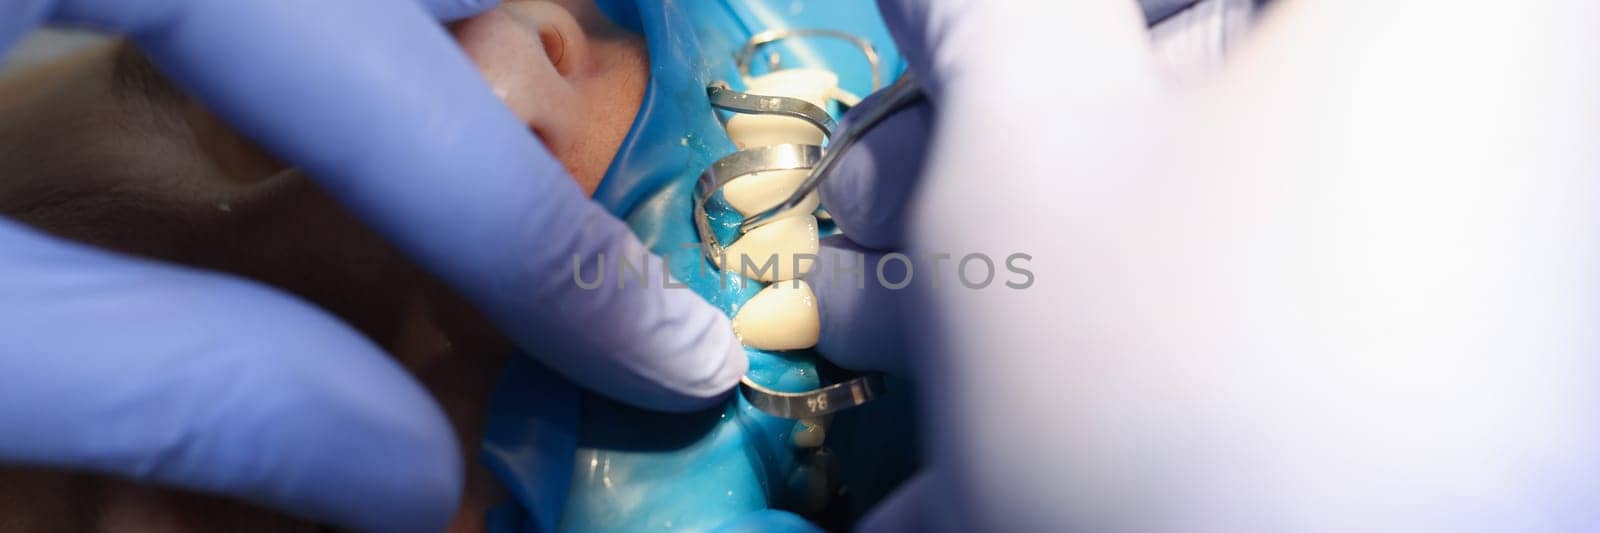 Doctor dentist fixing veneer on patient teeth using metal tools closeup by kuprevich